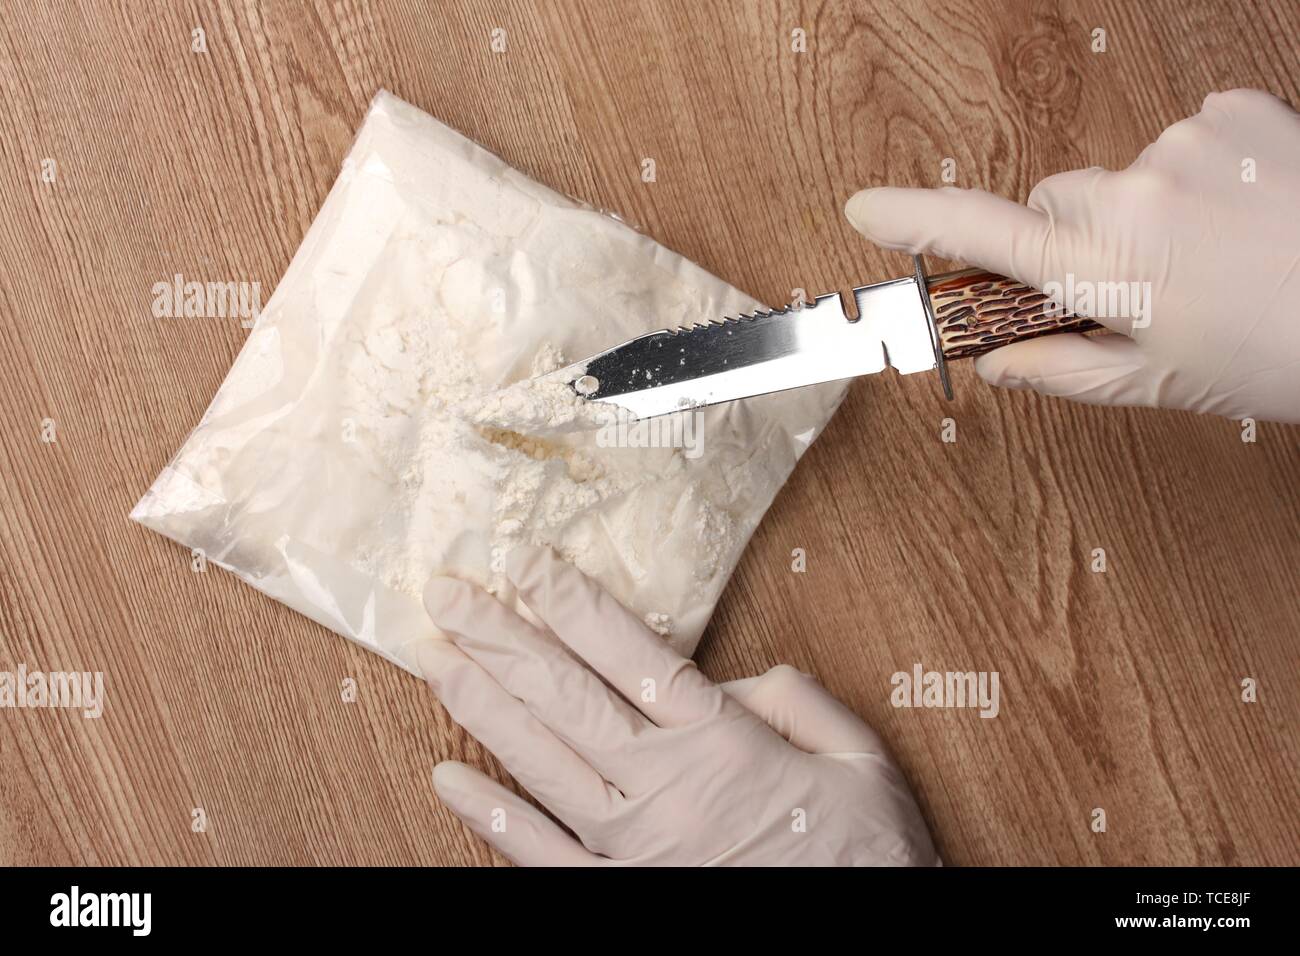 L'ouverture des paquets de cocaïne à l'aide d'un couteau sur la table en bois Banque D'Images